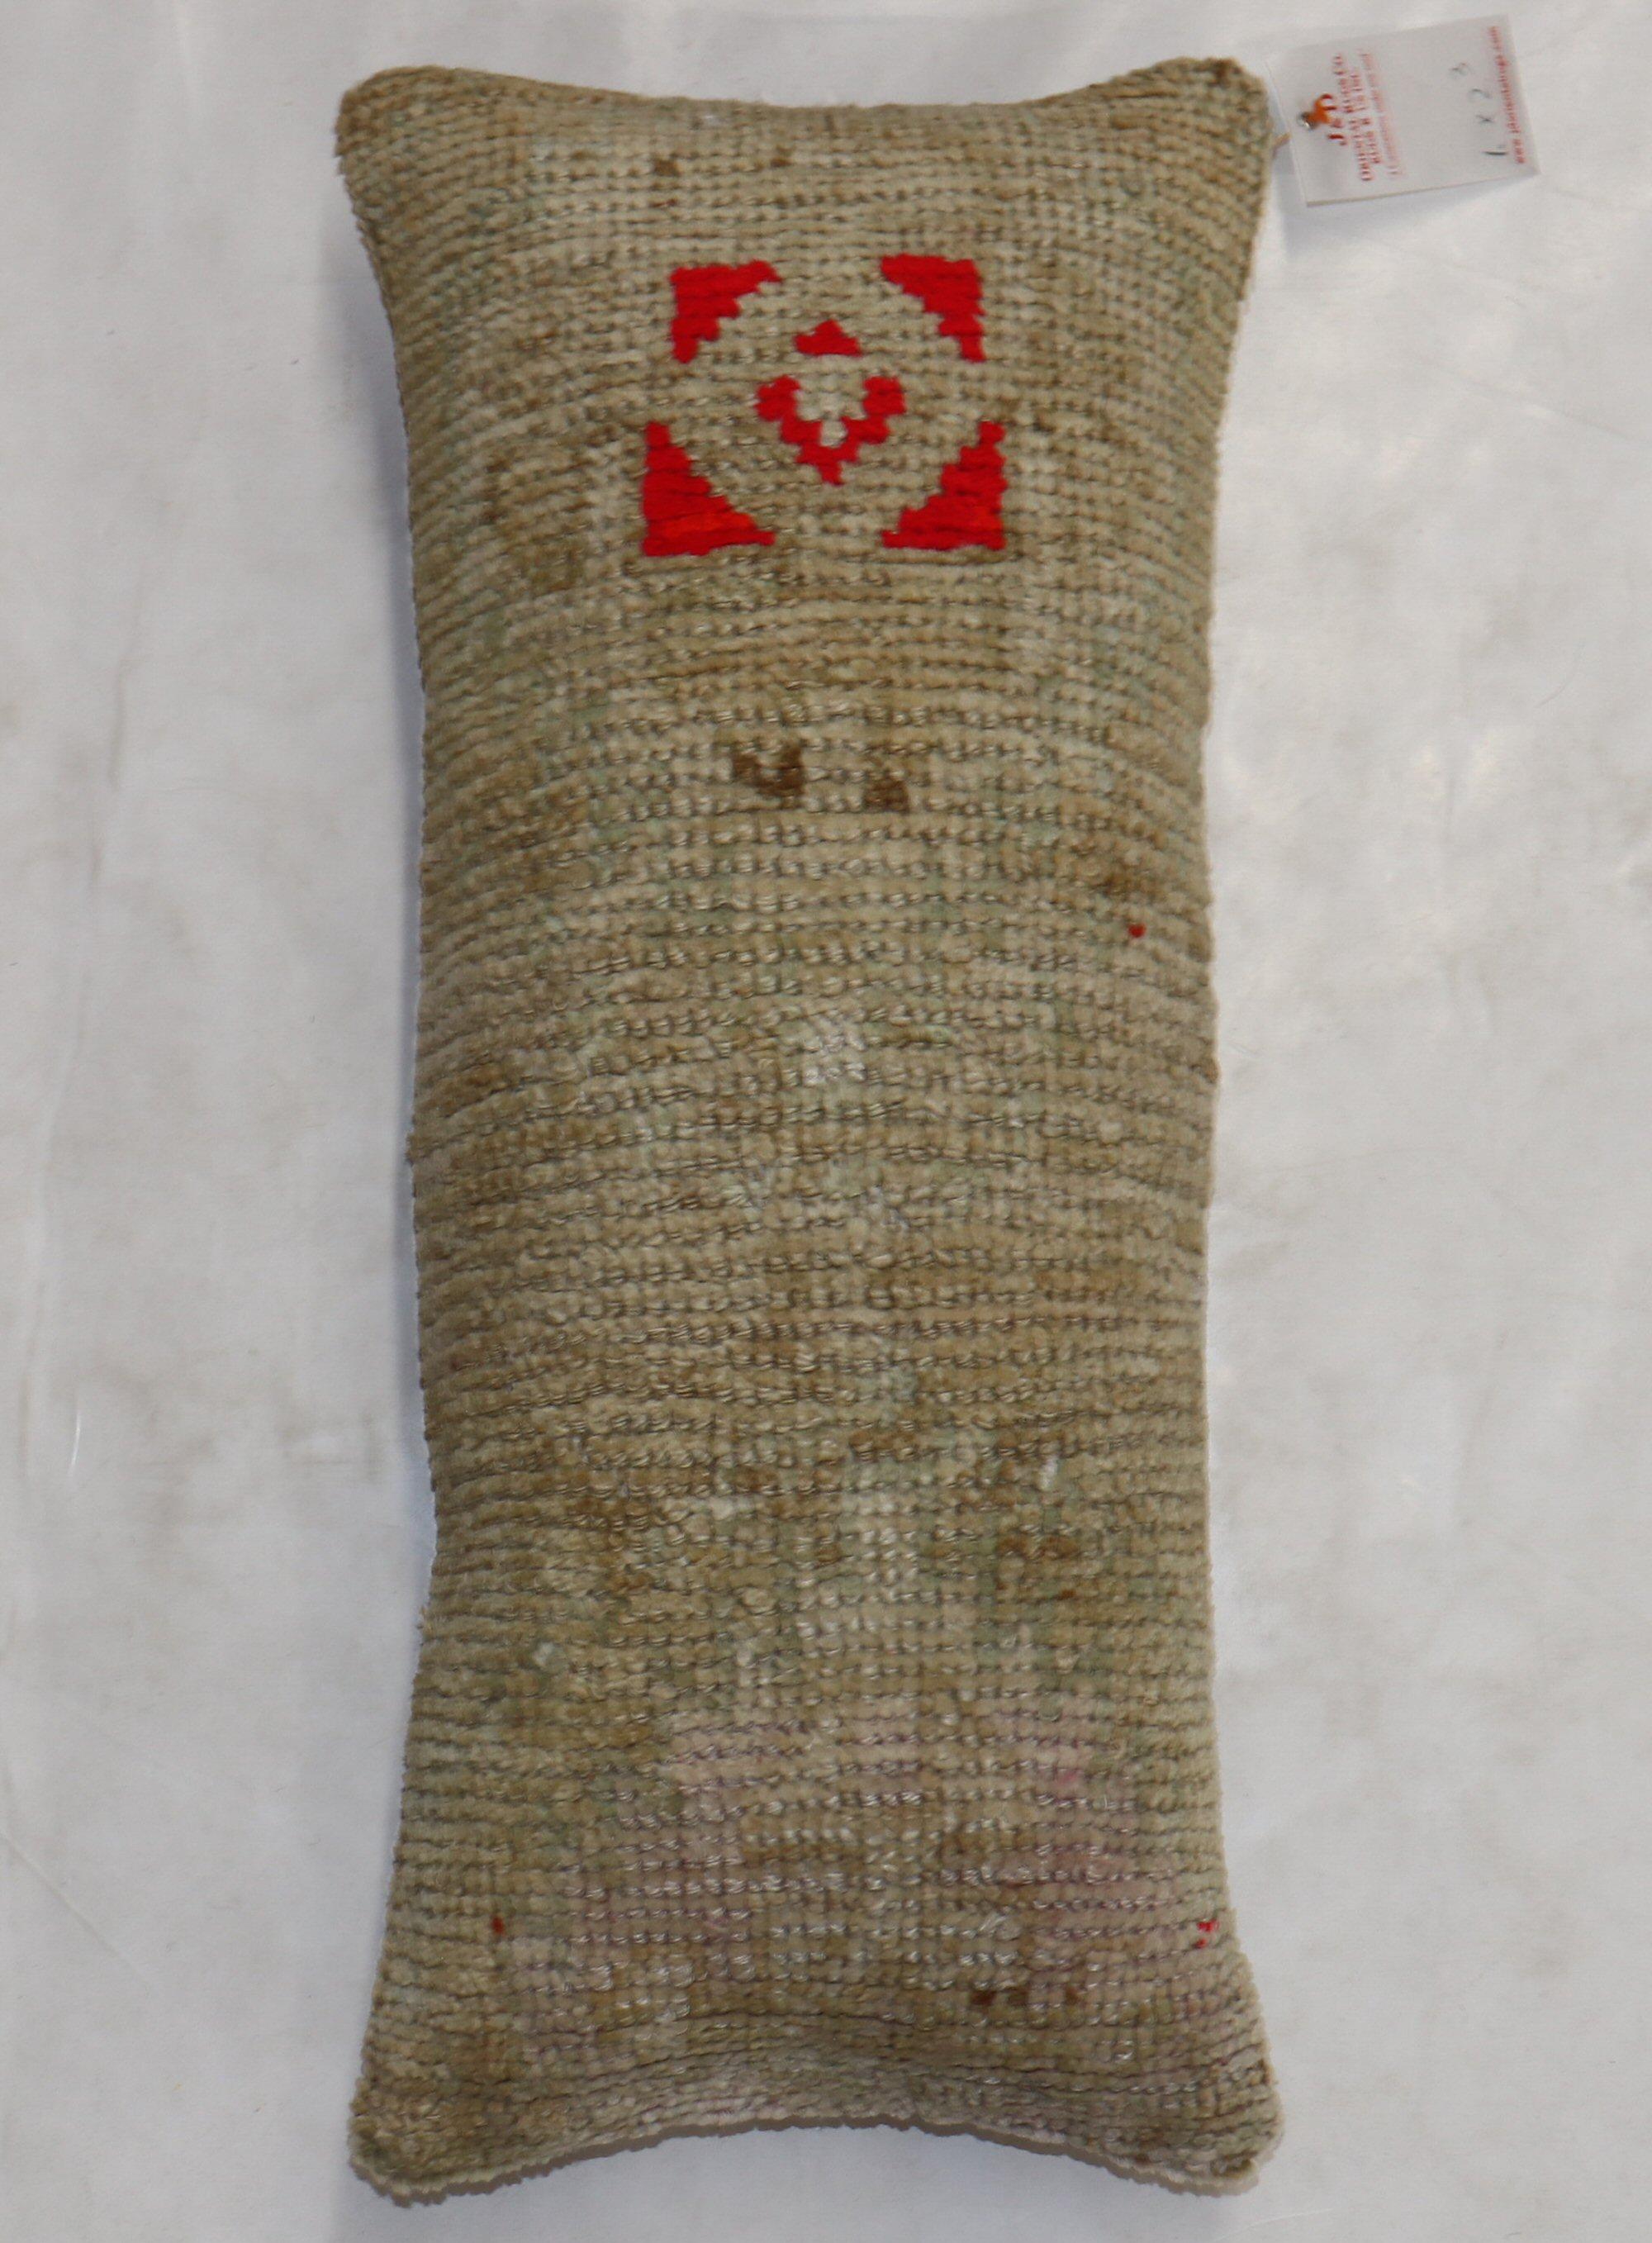 Oreiller de la taille d'un bolsters réalisé à partir d'une bordure d'un tapis turc d'Anatolie du 20e siècle.

Taille : 12